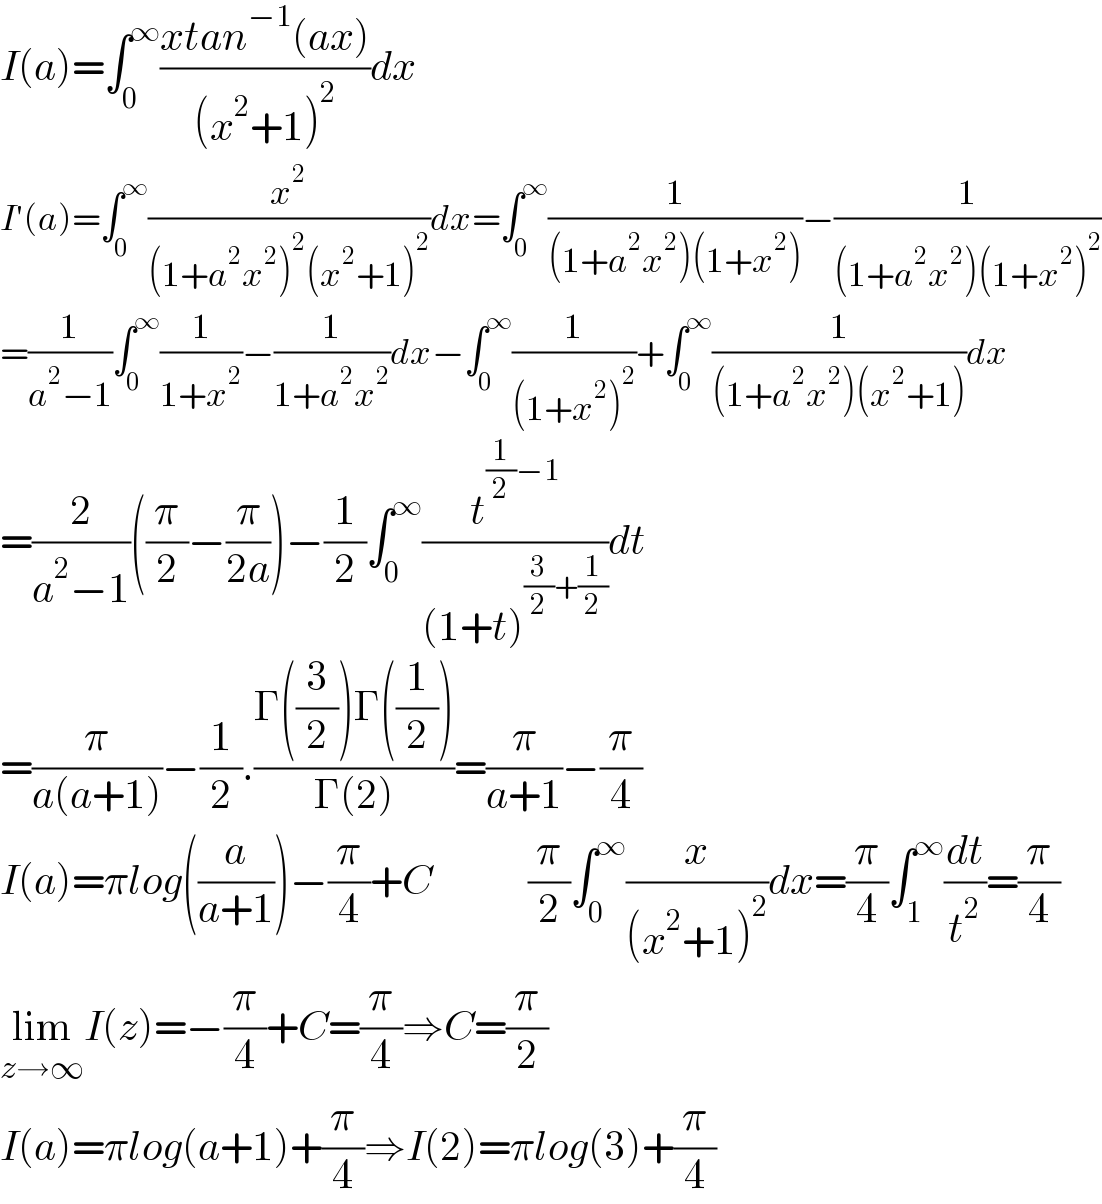 I(a)=∫_0 ^∞ ((xtan^(−1) (ax))/((x^2 +1)^2 ))dx  I′(a)=∫_0 ^∞ (x^2 /((1+a^2 x^2 )^2 (x^2 +1)^2 ))dx=∫_0 ^∞ (1/((1+a^2 x^2 )(1+x^2 )))−(1/((1+a^2 x^2 )(1+x^2 )^2 ))  =(1/(a^2 −1))∫_0 ^∞ (1/(1+x^2 ))−(1/(1+a^2 x^2 ))dx−∫_0 ^∞ (1/((1+x^2 )^2 ))+∫_0 ^∞ (1/((1+a^2 x^2 )(x^2 +1)))dx  =(2/(a^2 −1))((π/2)−(π/(2a)))−(1/2)∫_0 ^∞ (t^((1/2)−1) /((1+t)^((3/2)+(1/2)) ))dt  =(π/(a(a+1)))−(1/2).((Γ((3/2))Γ((1/2)))/(Γ(2)))=(π/(a+1))−(π/4)  I(a)=πlog((a/(a+1)))−(π/4)+C            (π/2)∫_0 ^∞ (x/((x^2 +1)^2 ))dx=(π/4)∫_1 ^∞ (dt/t^2 )=(π/4)  lim_(z→∞) I(z)=−(π/4)+C=(π/4)⇒C=(π/2)  I(a)=πlog(a+1)+(π/4)⇒I(2)=πlog(3)+(π/4)  